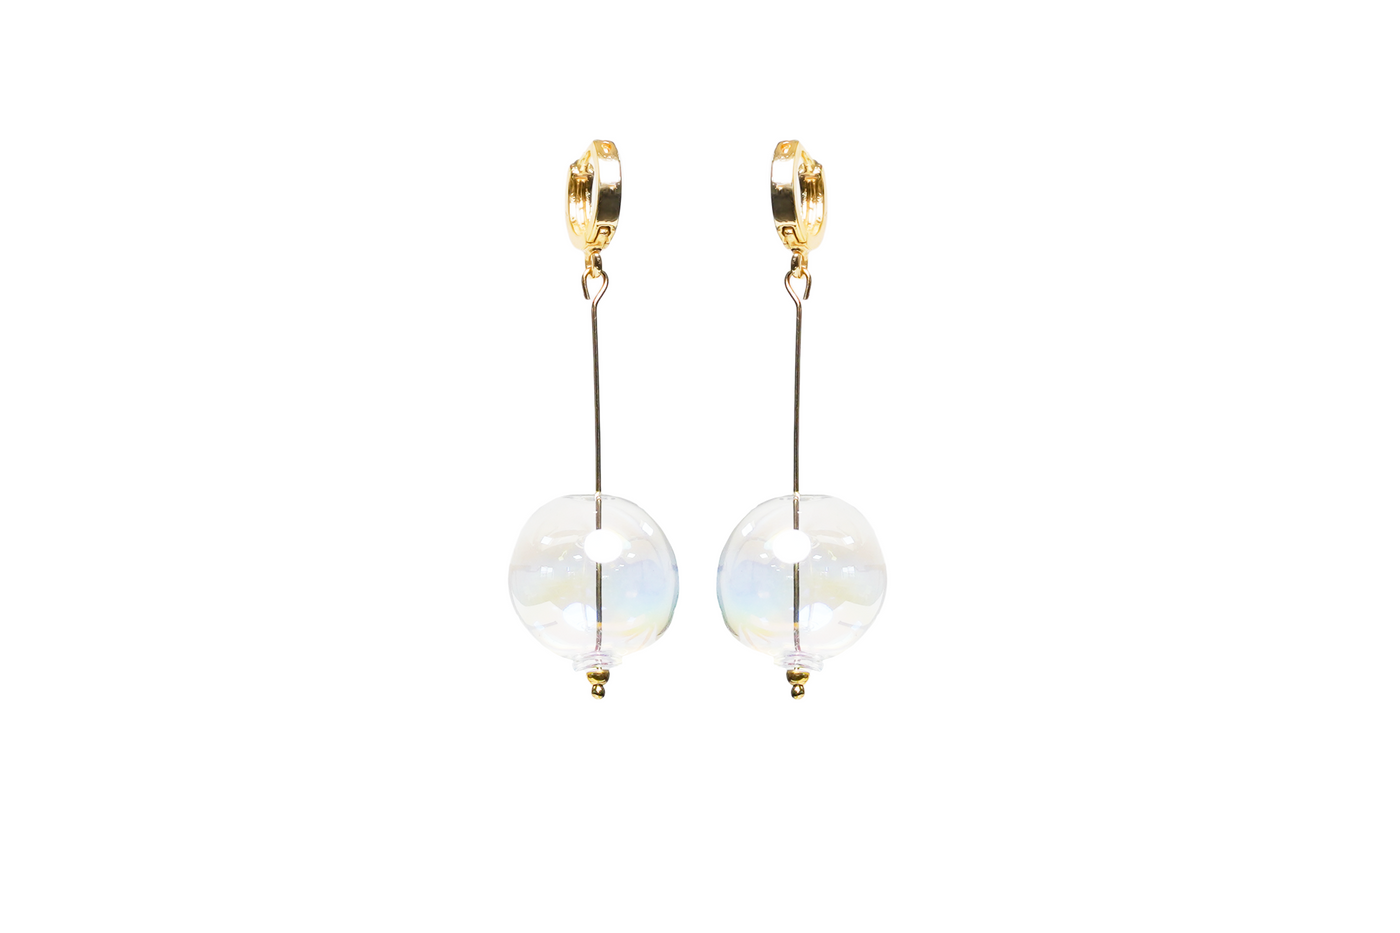 Handmade glass drop earrings. Gold Vermeil sterling silver huggie hoops.